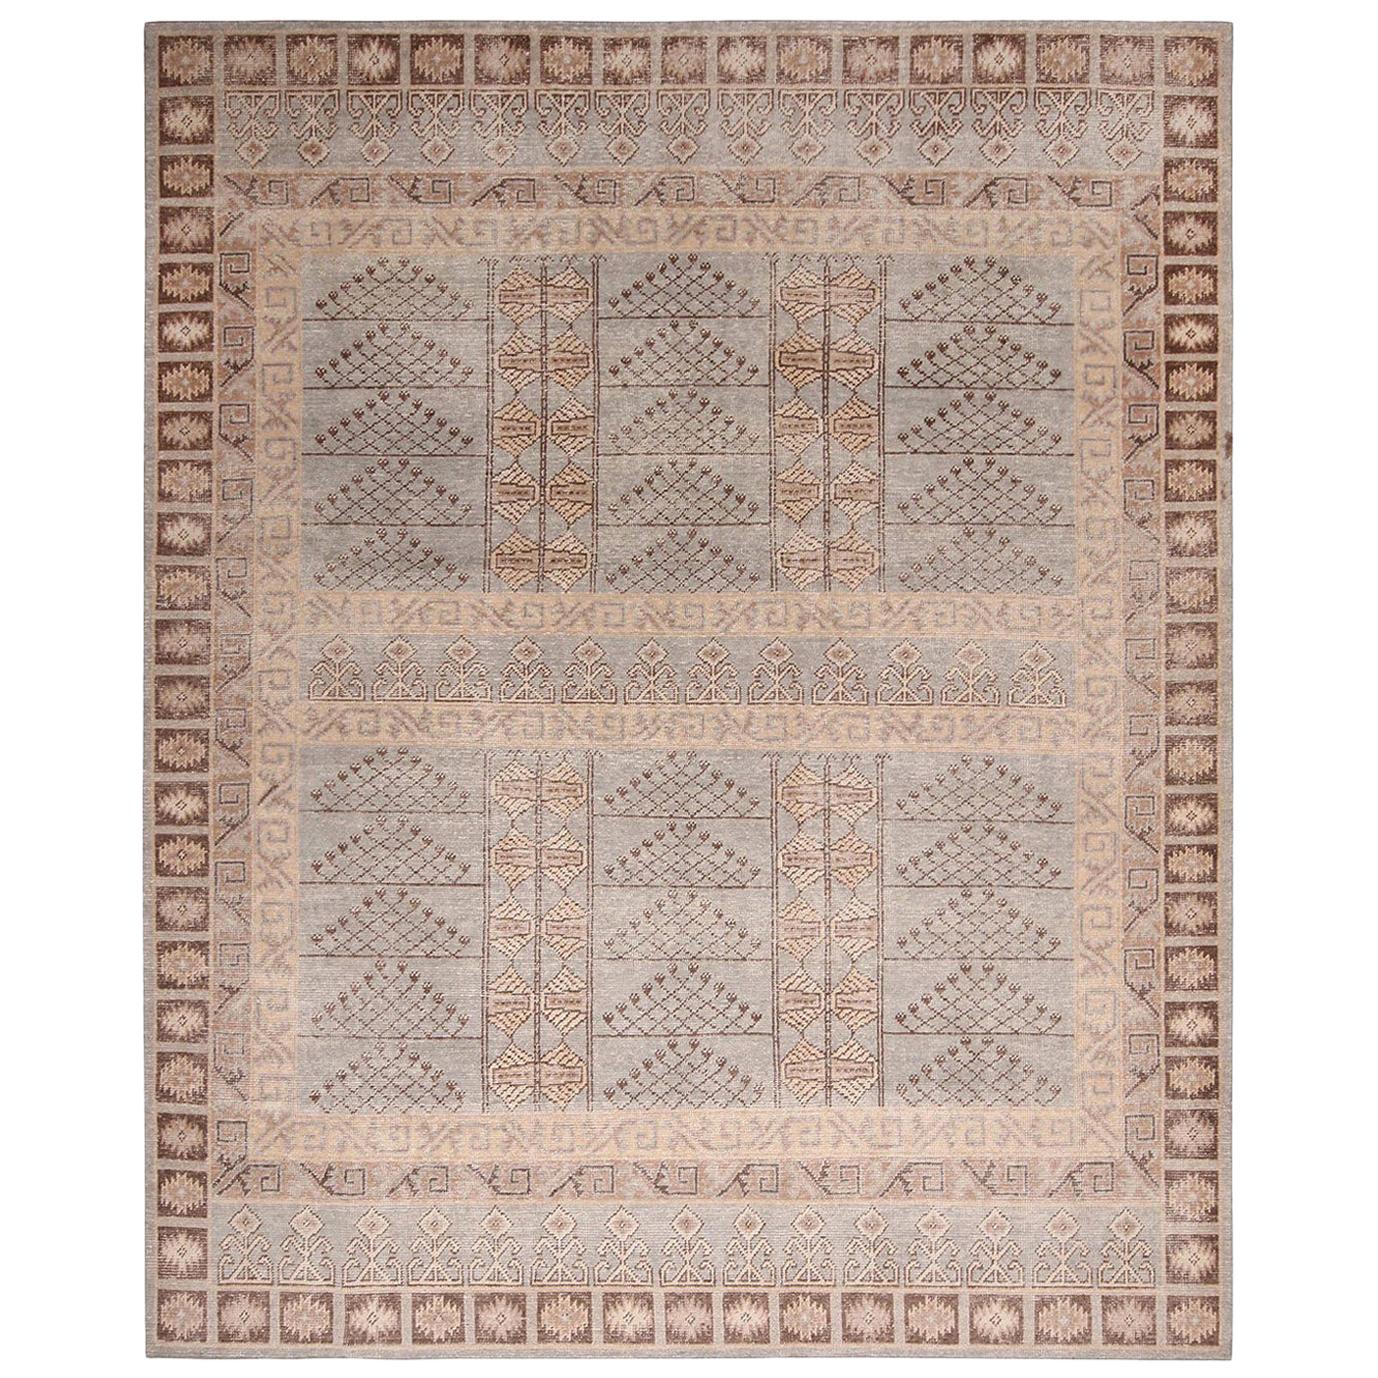 Teppich von Teppich & Kilims aus beige-brauner und blauer Wolle aus der Homage-Kollektion